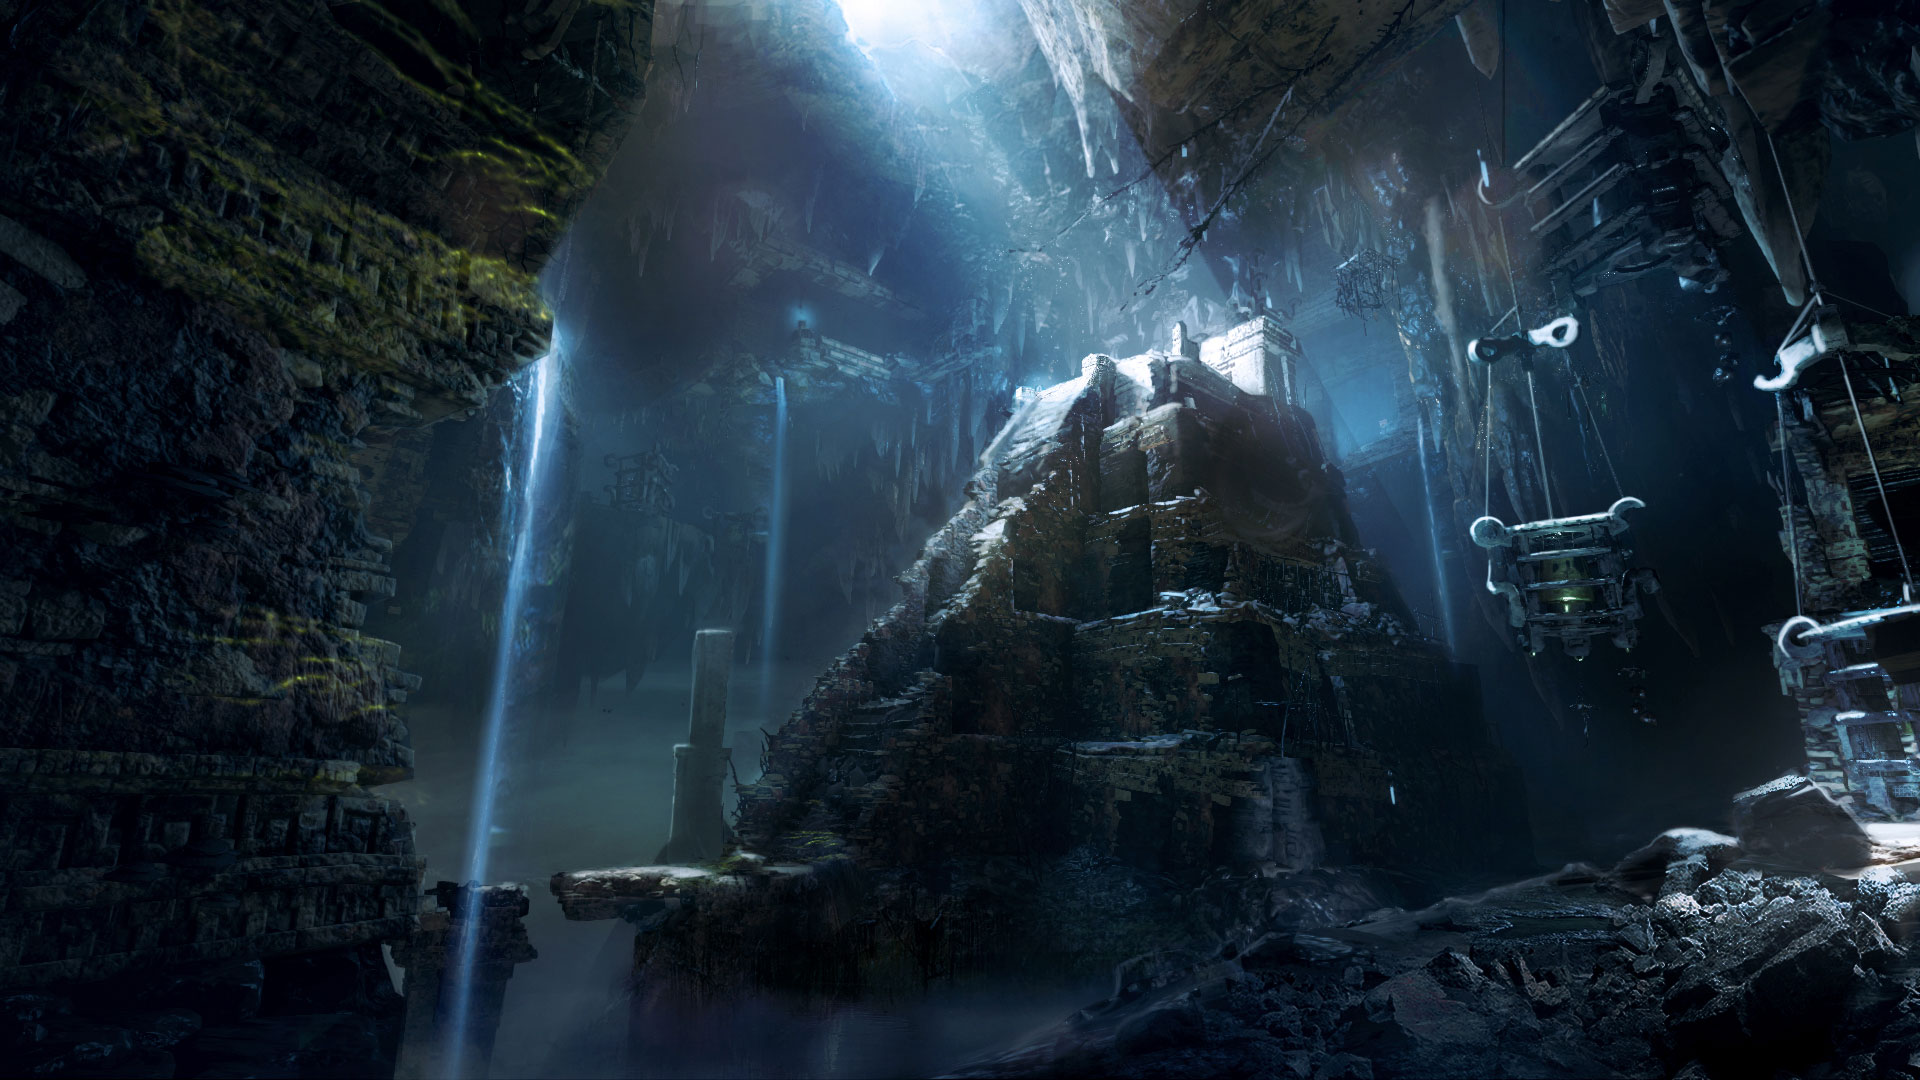 Grotte, python rocheux au centre avec escalier en pierre Shadow of the Tomb Raider artwork